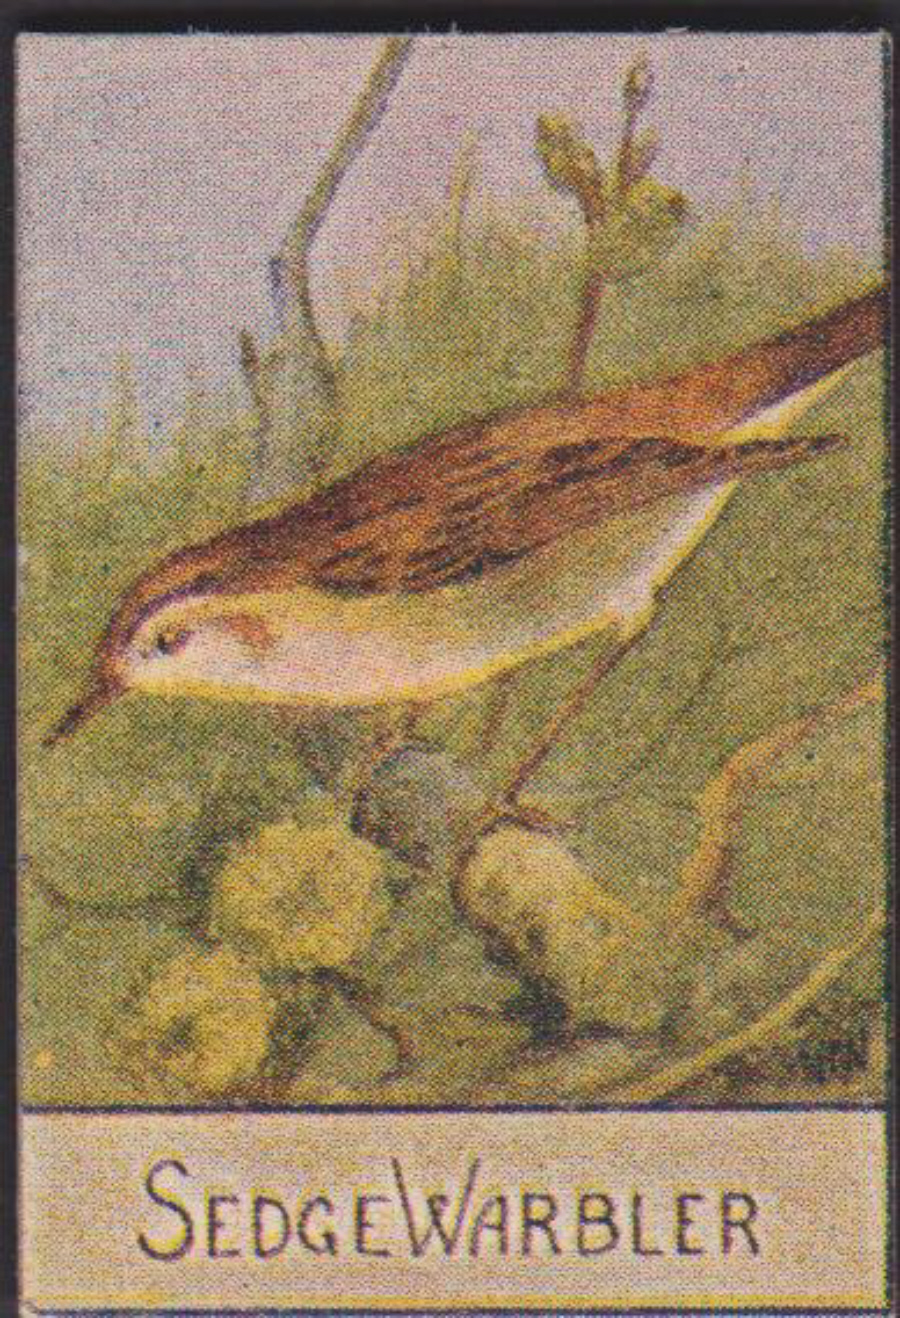 Spratt's British Bird Series Numbered No 75 Sedge Warbler